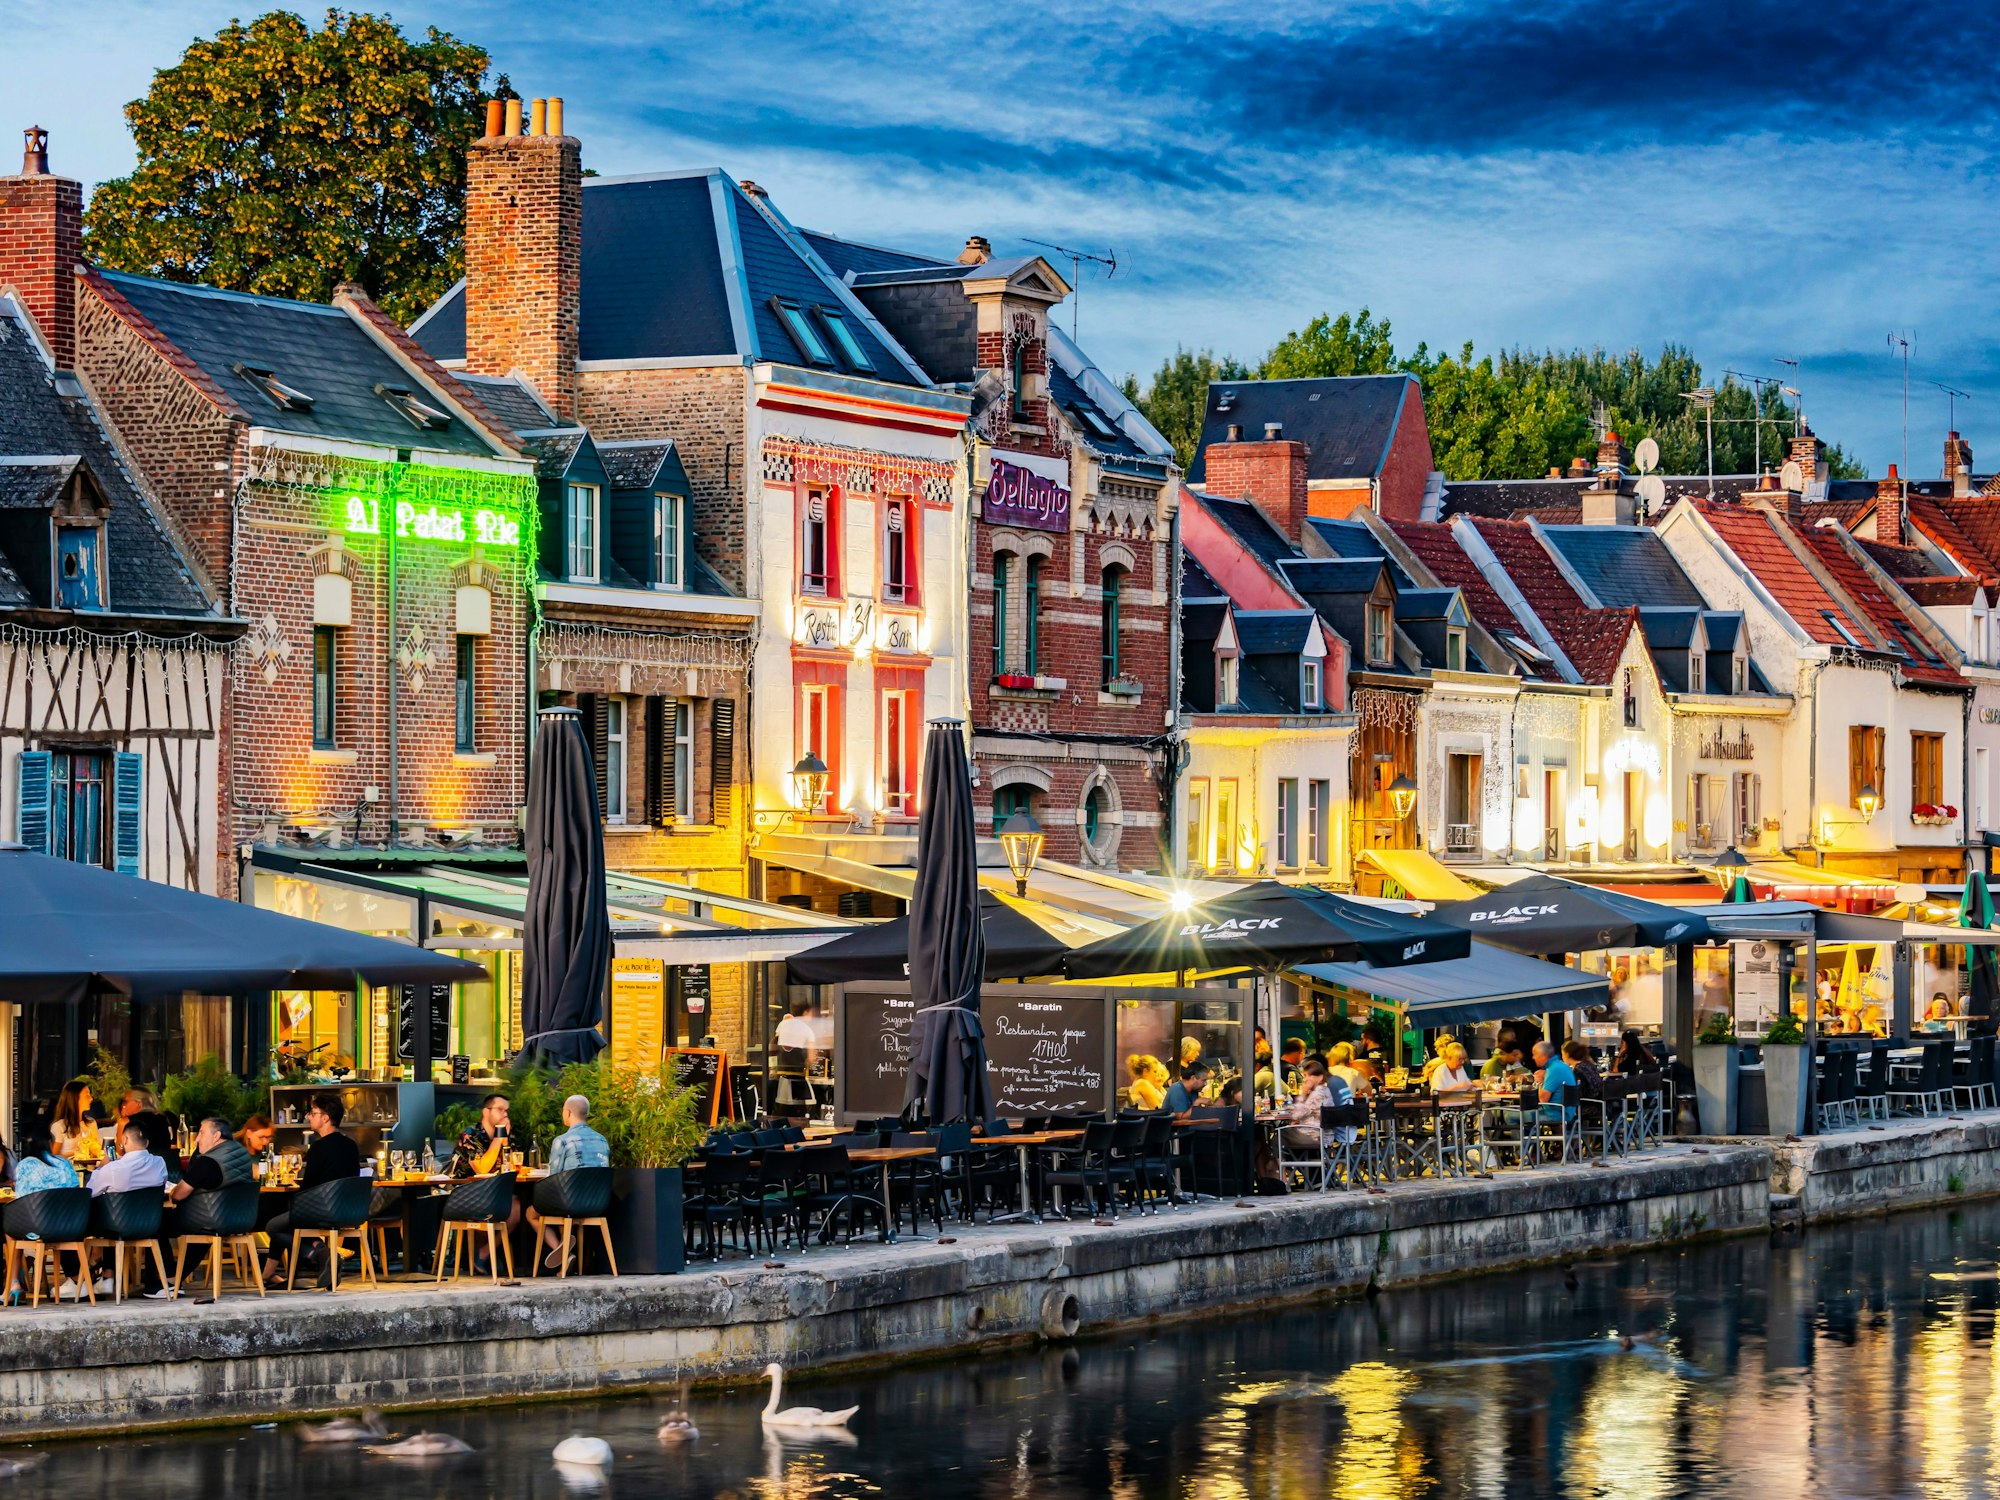 Restaurants in der Altstadt von Amiens, direkt am Fluss Somme.